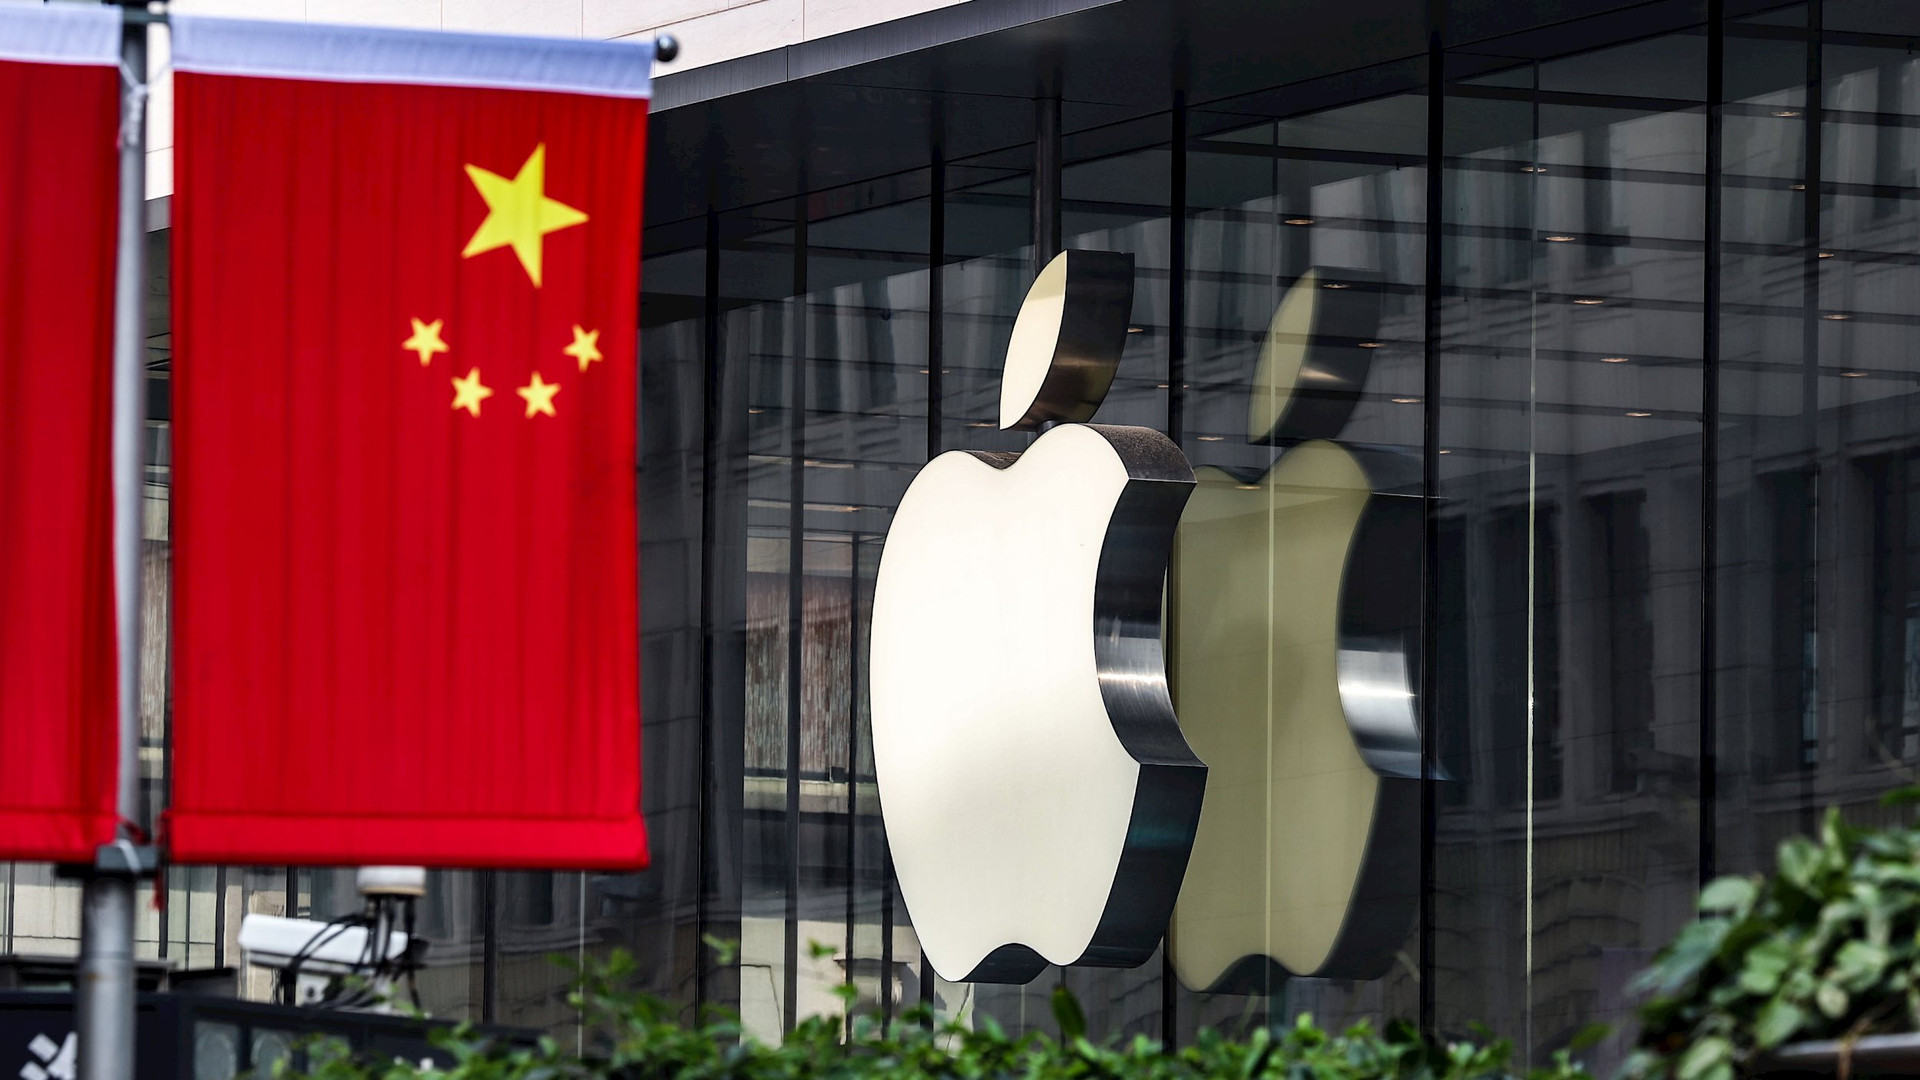 Doanh số iPhone tại Trung Quốc cắm đầu giảm, thách thức nào đang bủa vây Apple tại thị trường quan trọng bậc nhất này? - Ảnh 1.